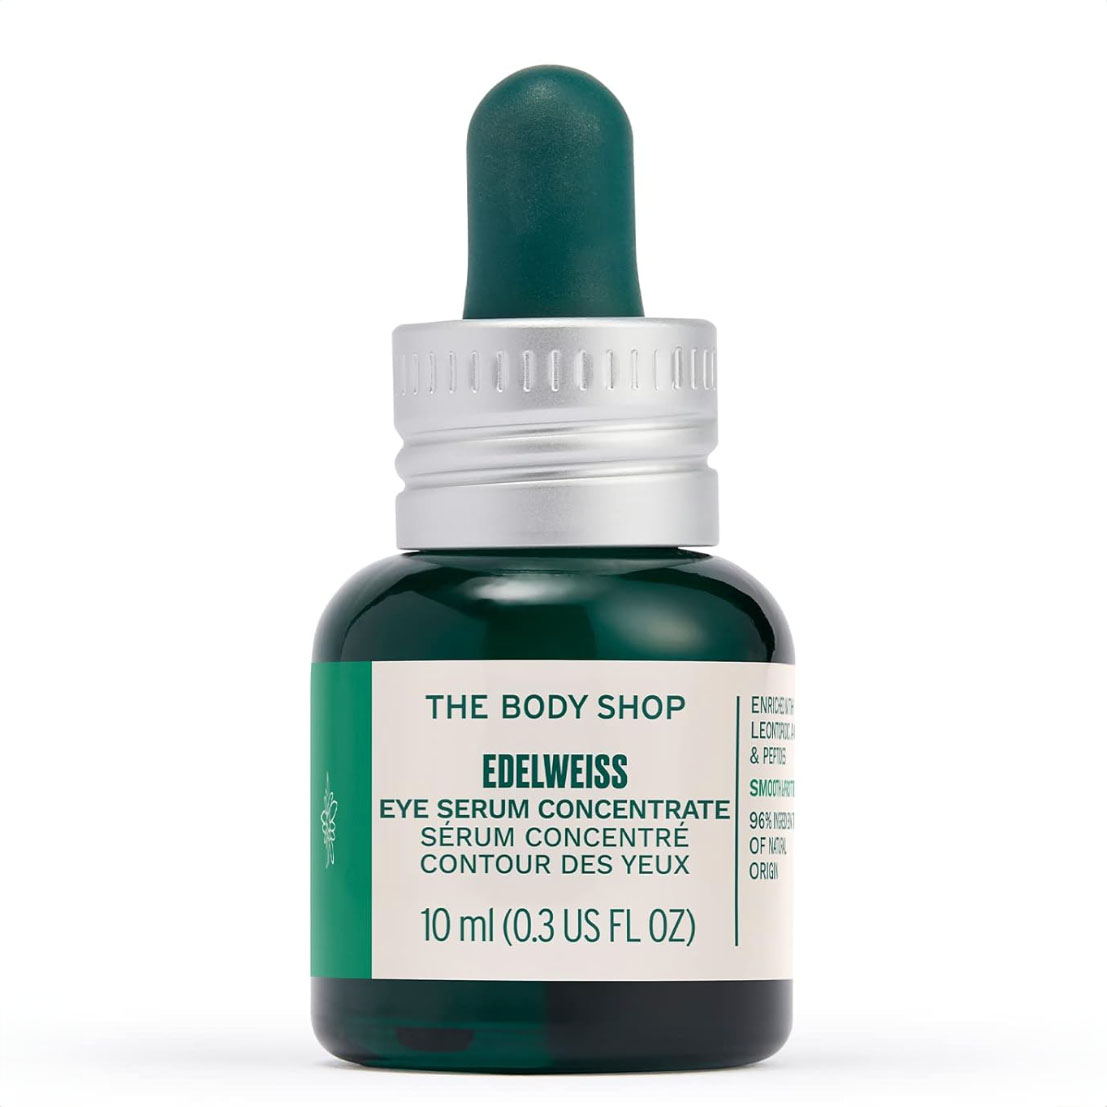 Body shop eye serum in green bottle